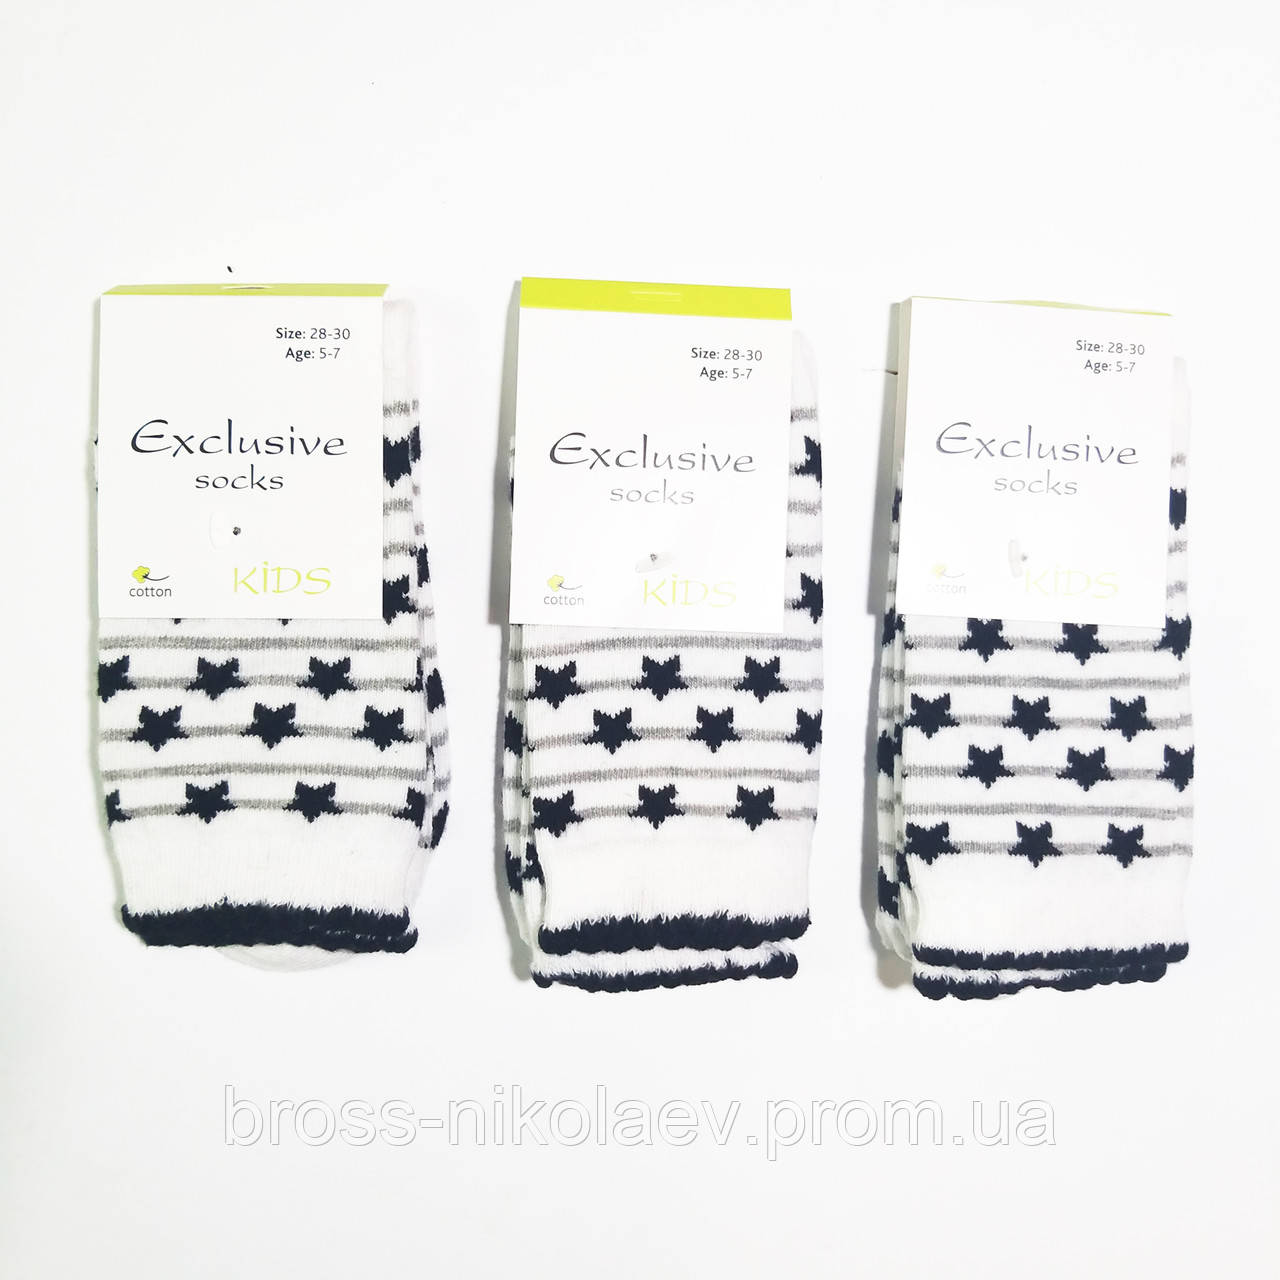 Високі дитячі шкарпетки з малюнками демі шкарпетки для дівчинки хлопчика ТМ Premium (BROSS)